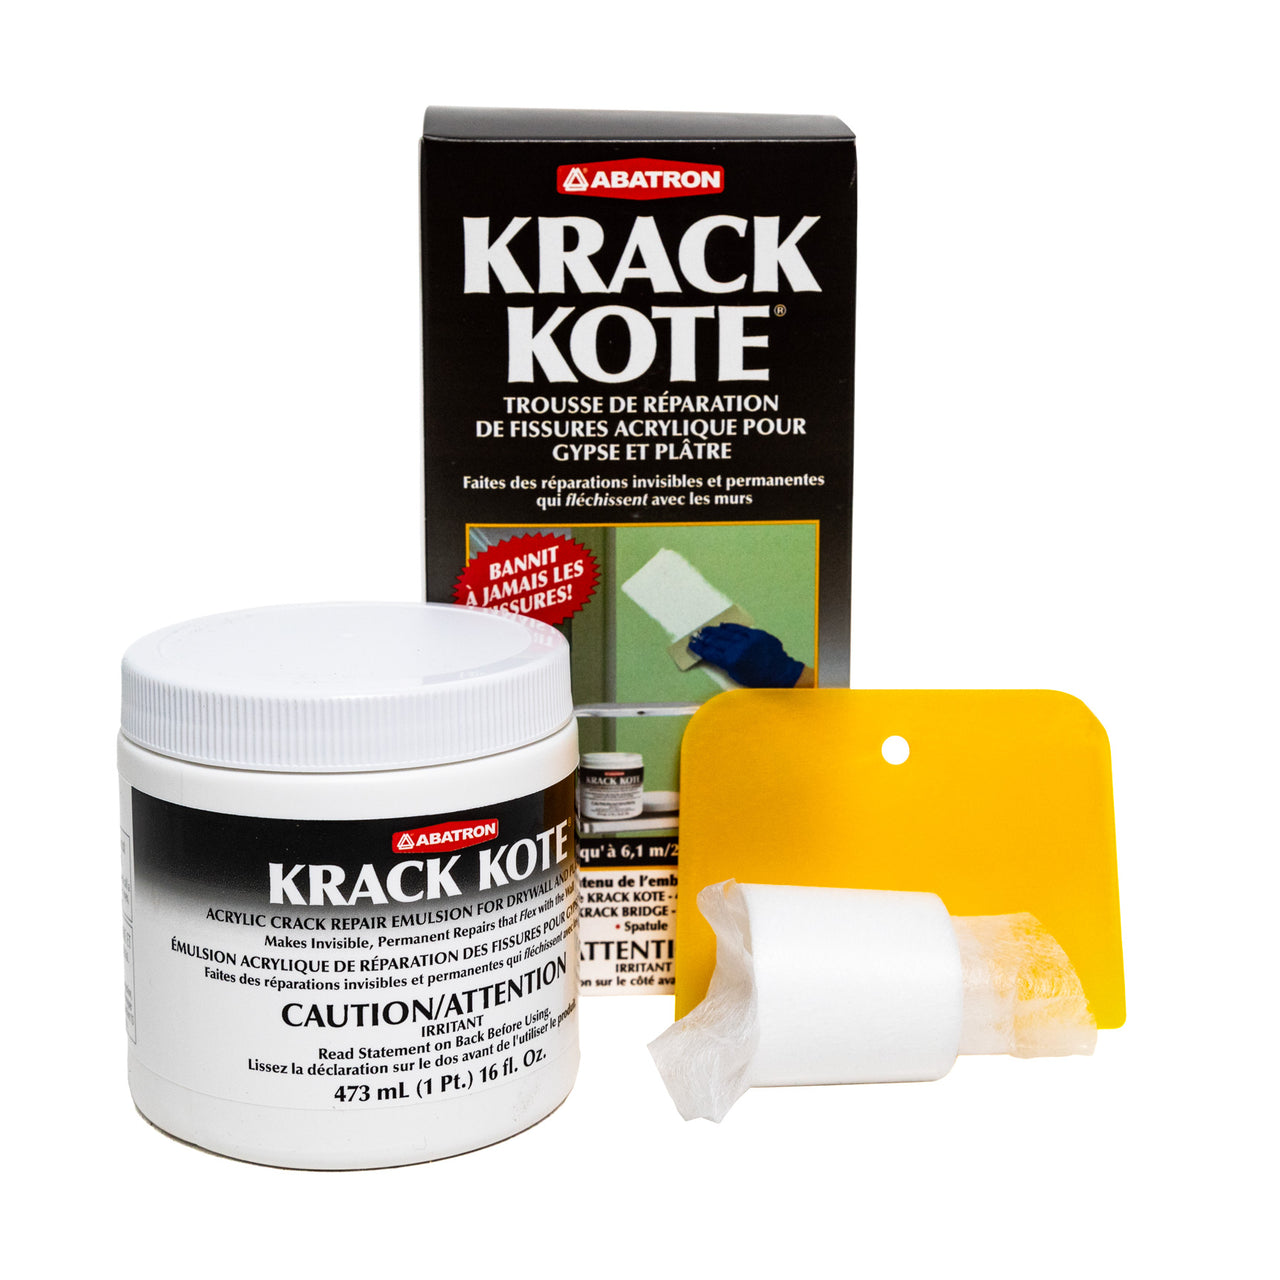 Krack Kote Drywall Repair